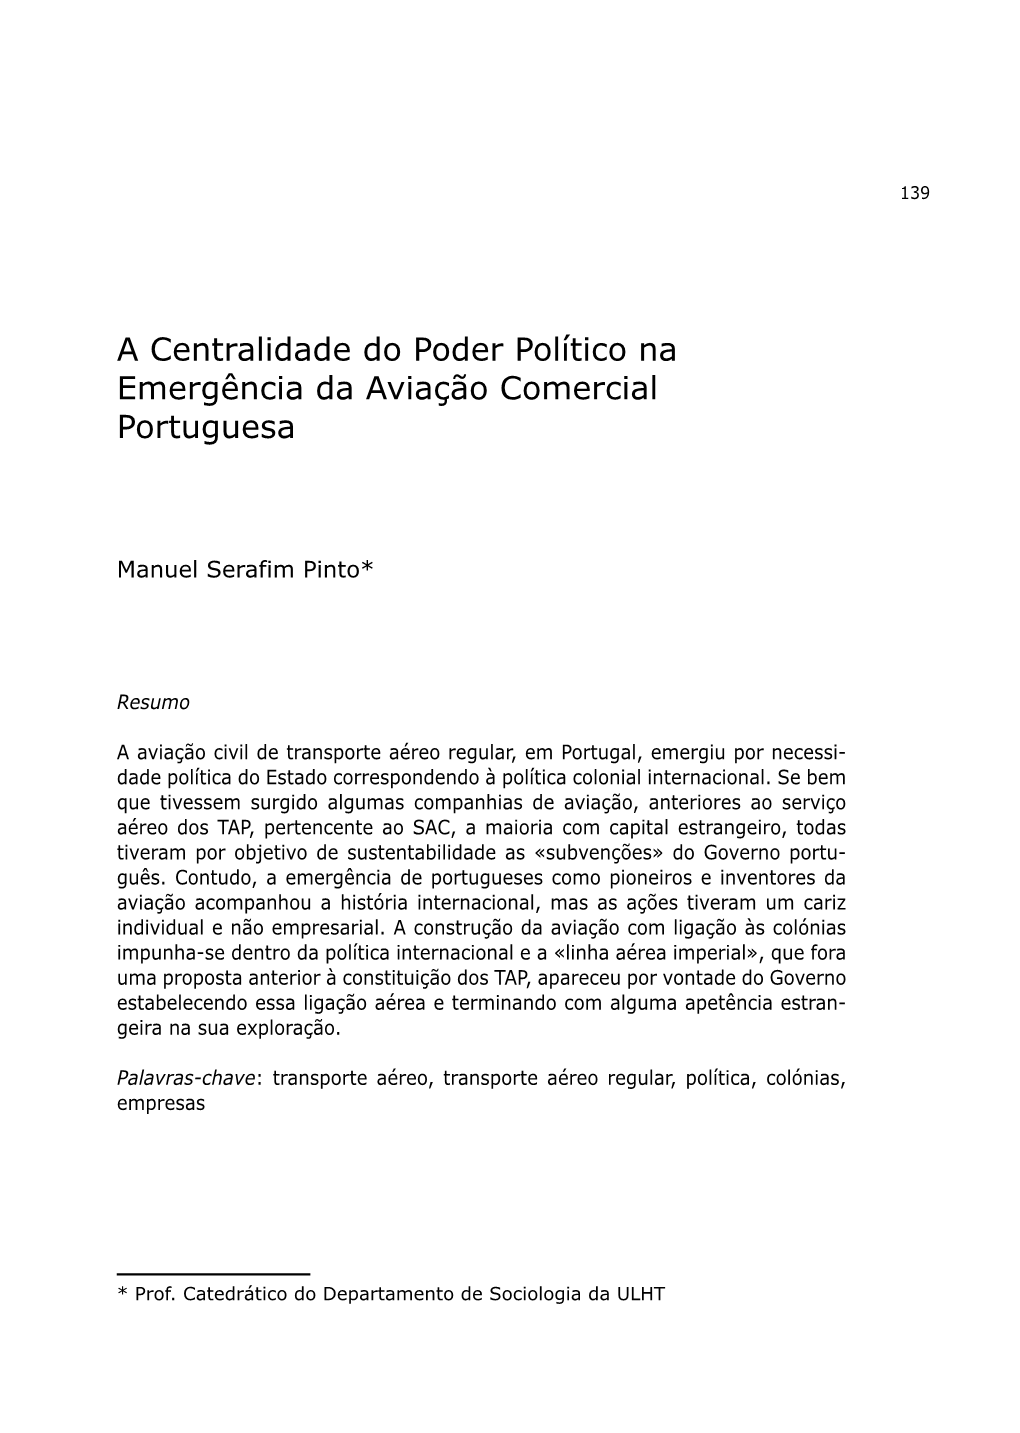 A Centralidade Do Poder Político Na Emergência Da Aviação Comercial Portuguesa